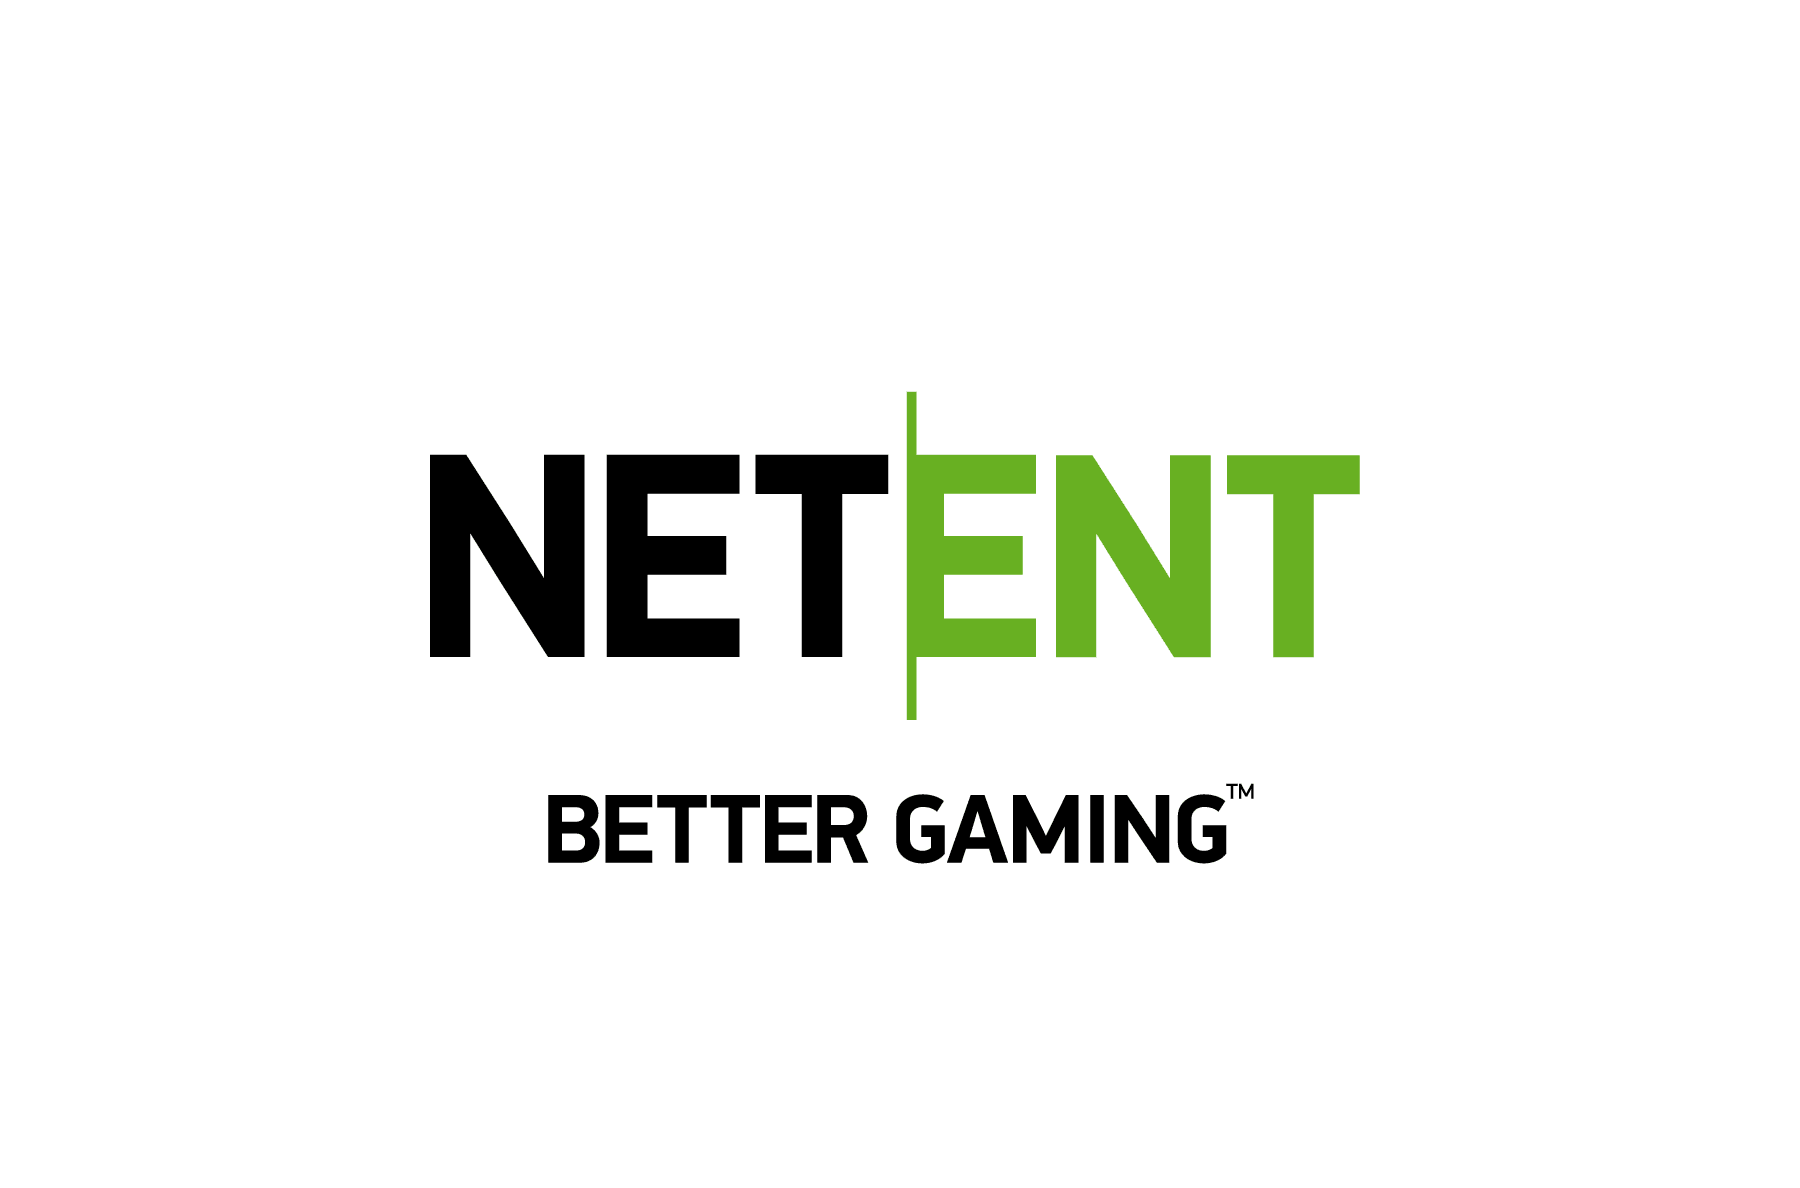 ល្អបំផុត 10 កាស៊ីណូចល័ត ជាមួយ NetEnt